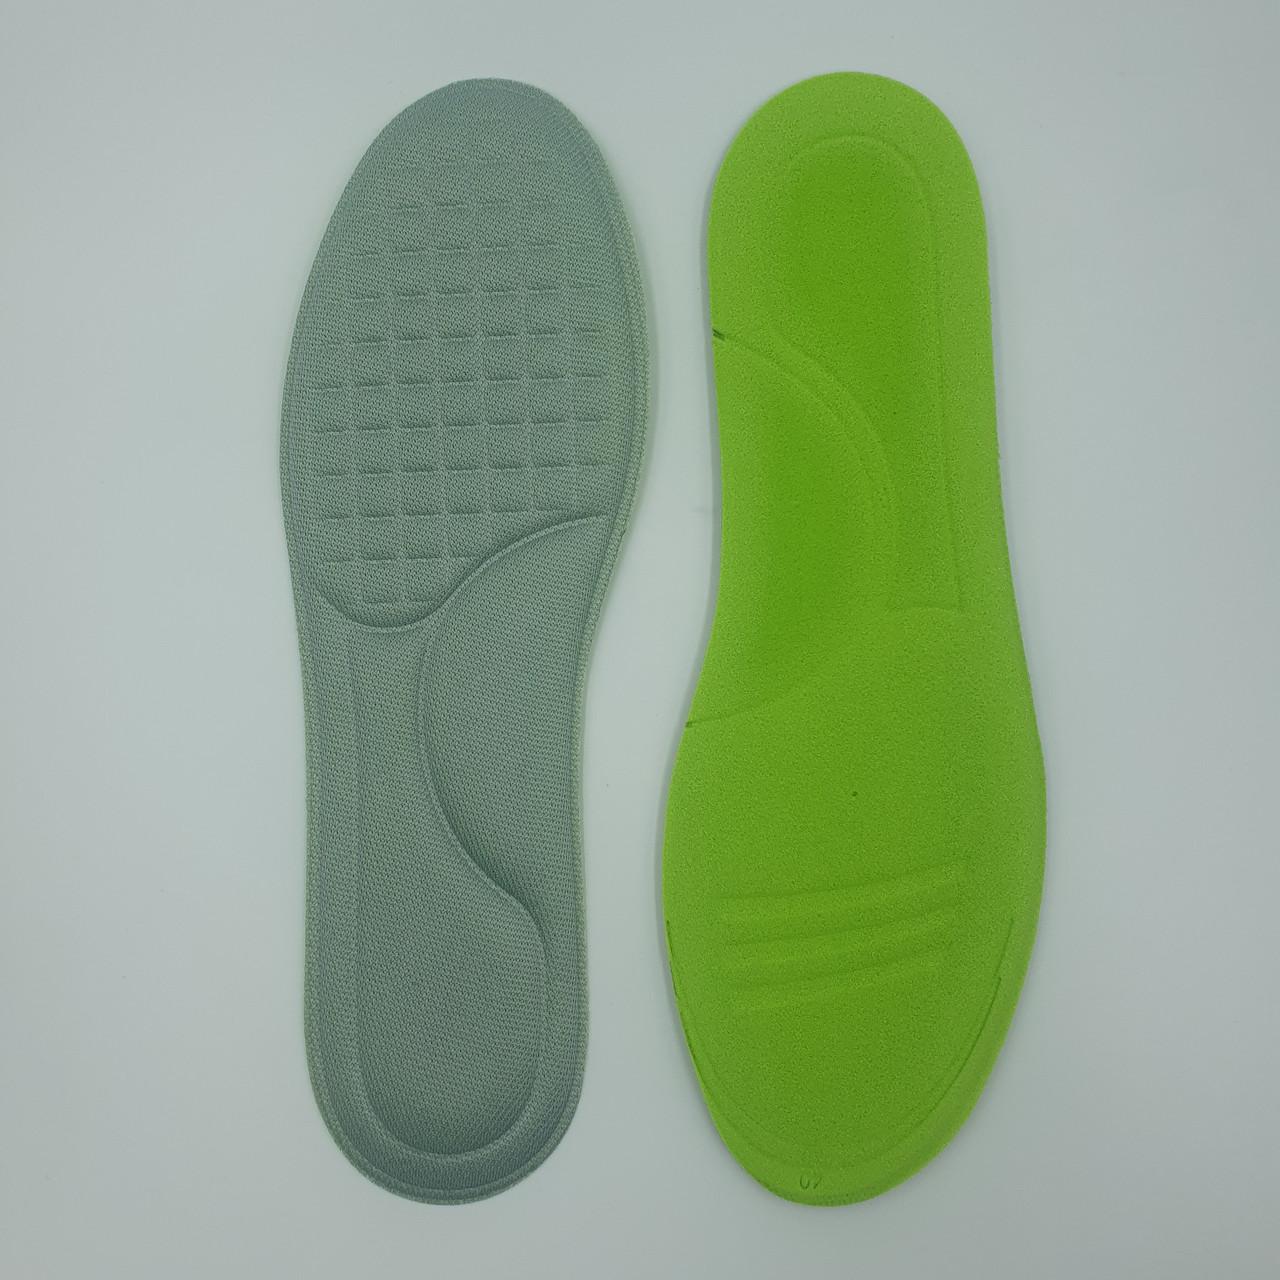 М'які анатомічні антибактеріальні устілки для взуття/ для спортивного взуття обрізні розмір 36-37 (23-24 см) сірі